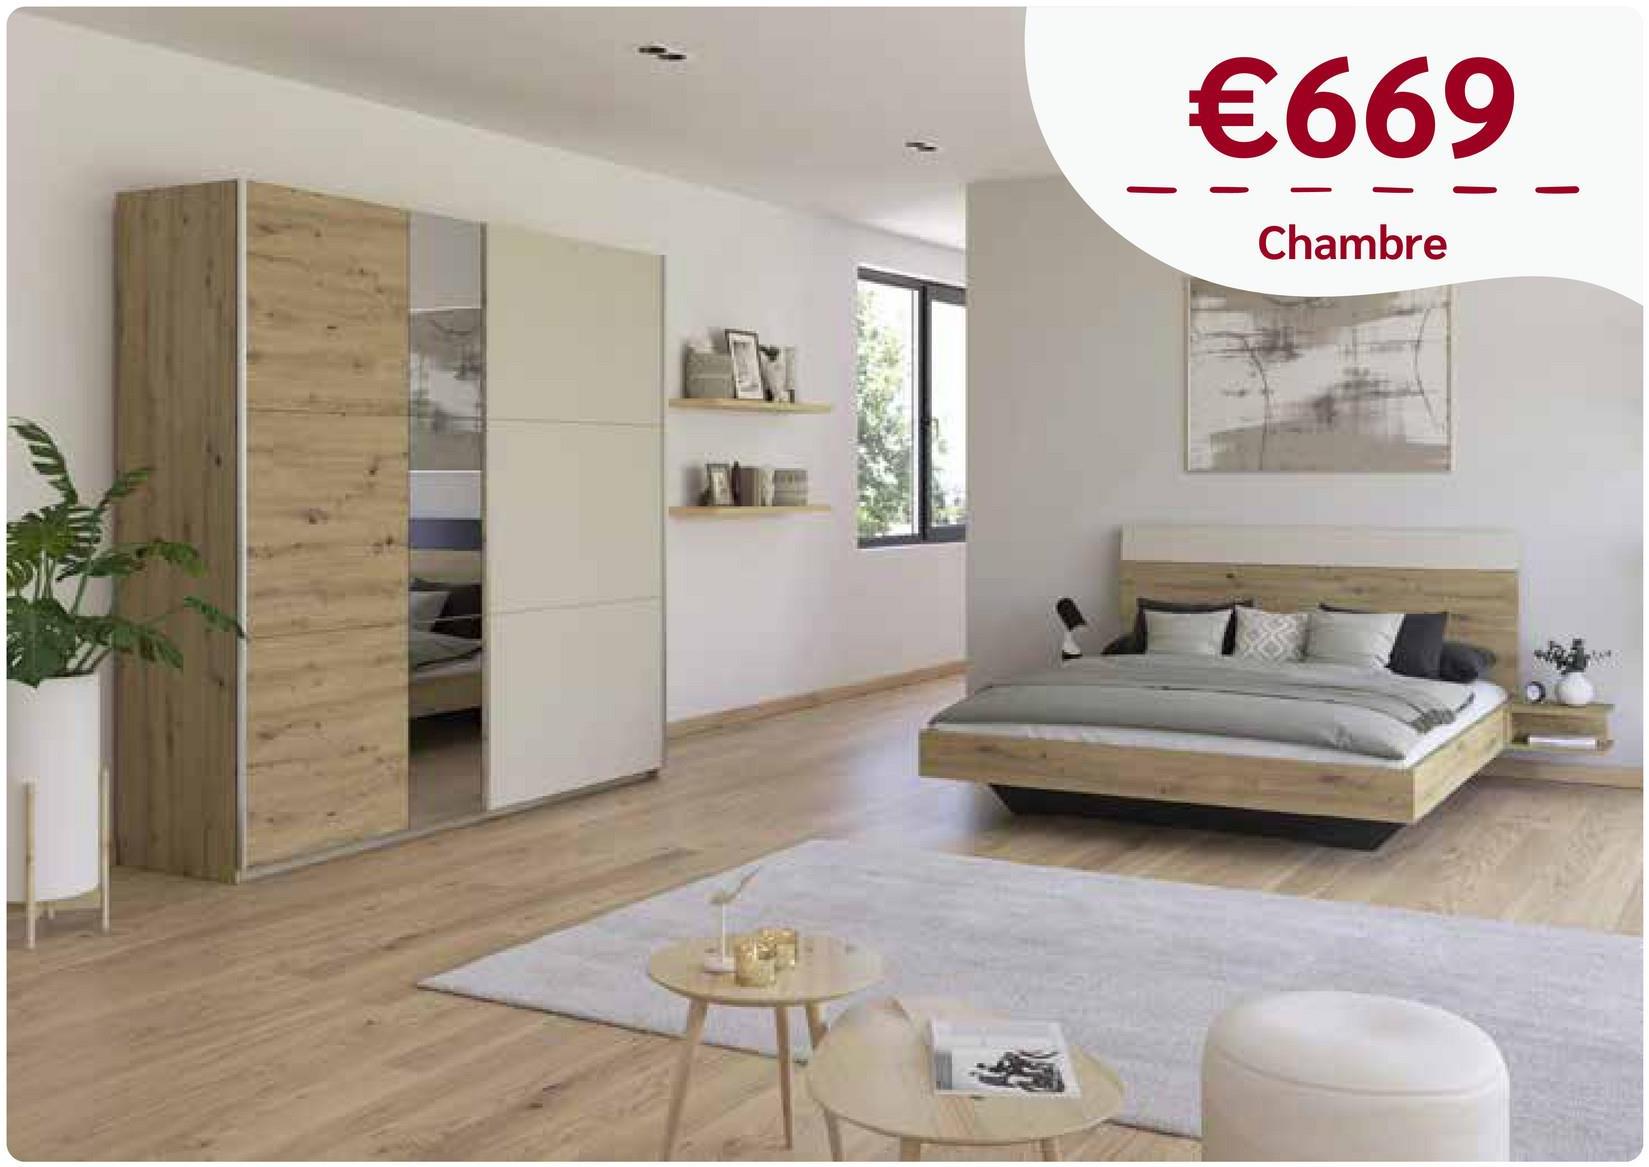 €669
Chambre